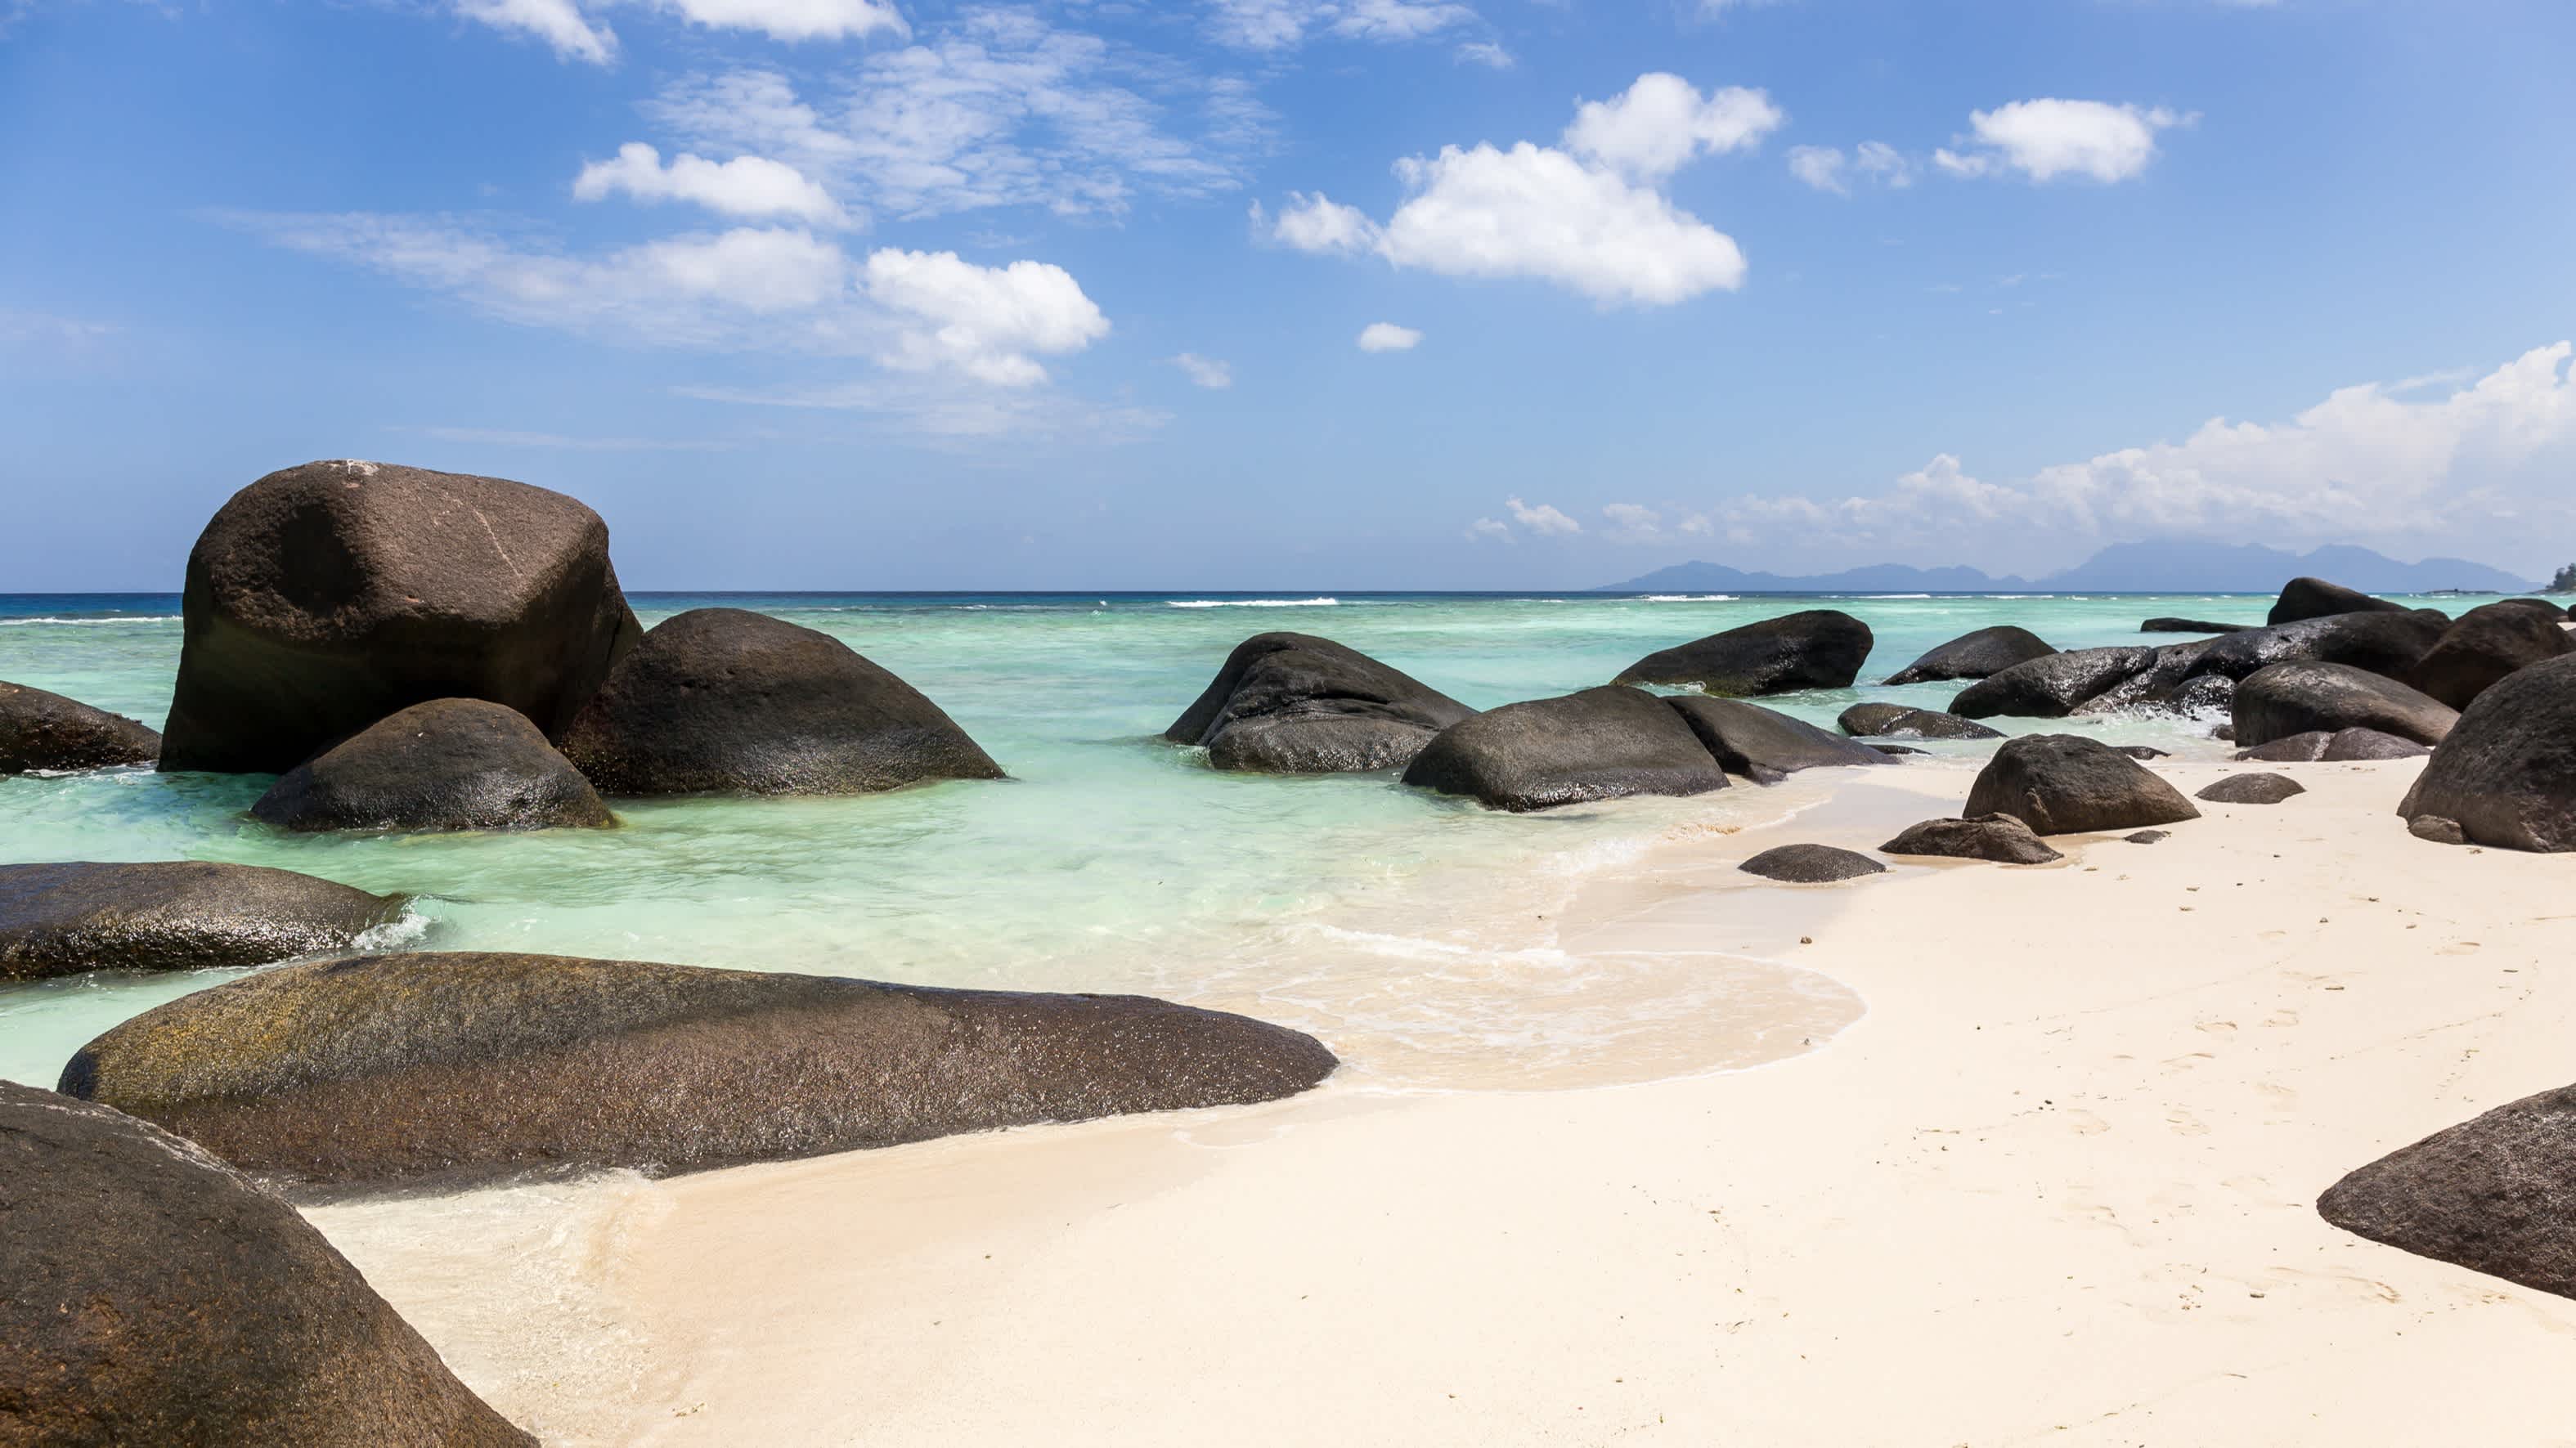 Schöner Strand und türkisfarbenes Meer auf der Insel Silhouette, Seychellen

